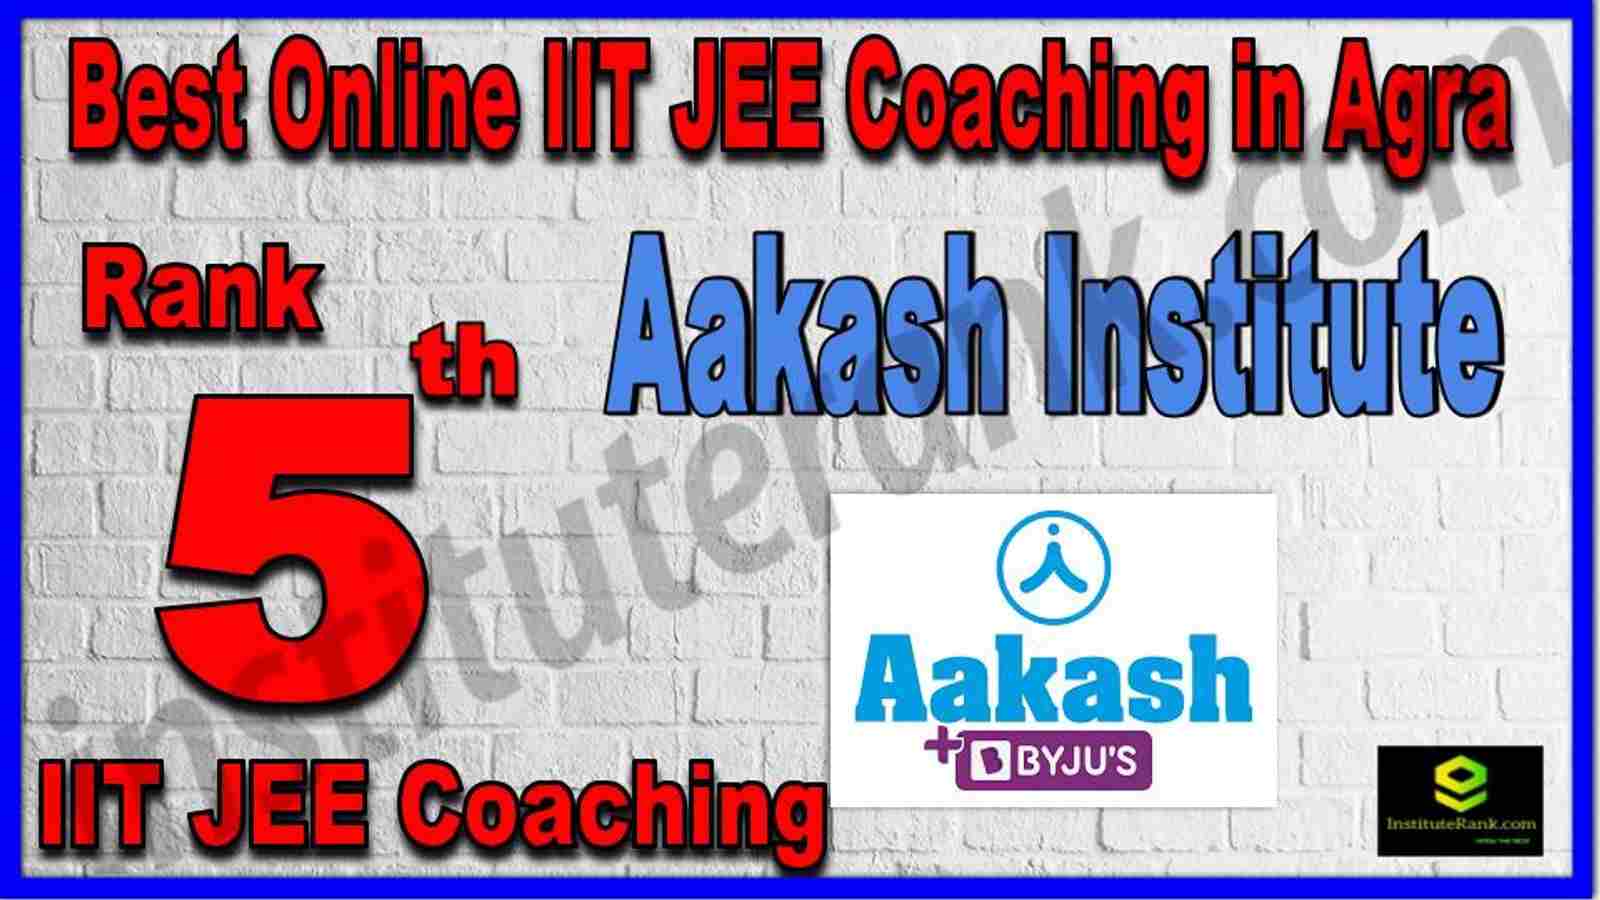 Rank 5th Best Online IIT JEE Coaching in Agra